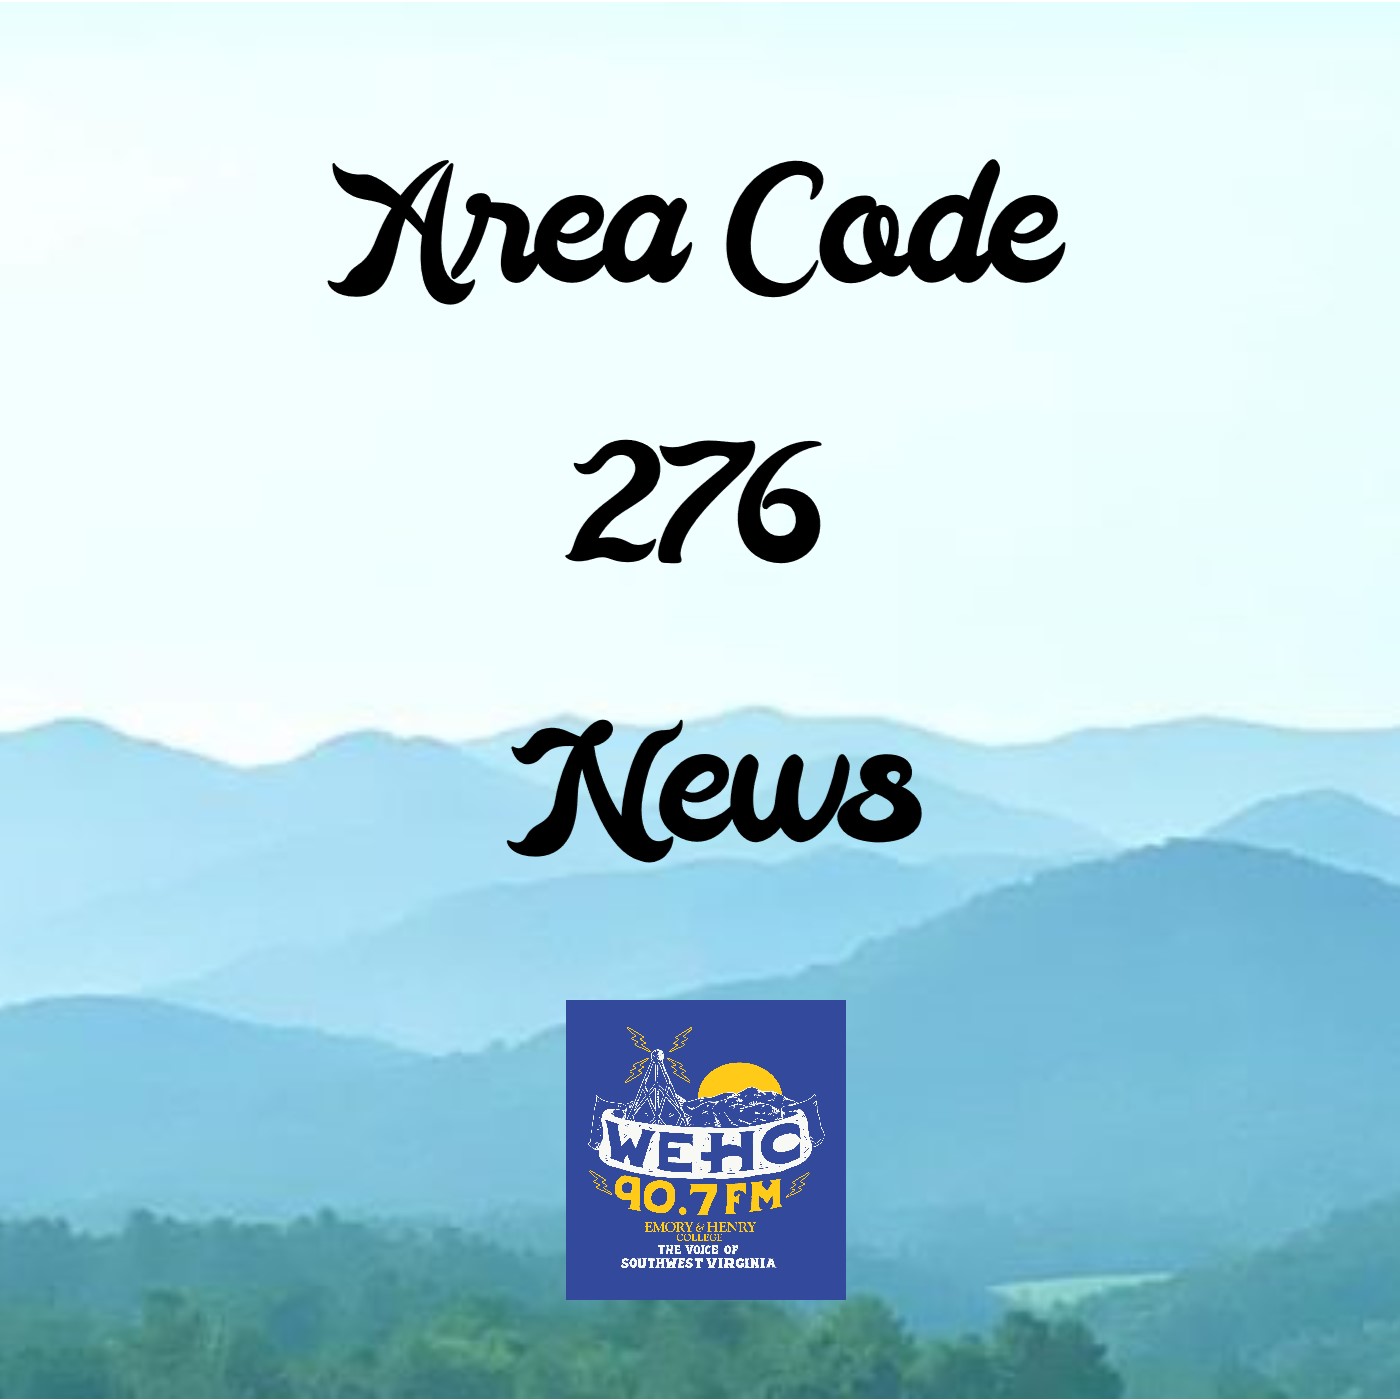 Artwork for Area Code 276 News